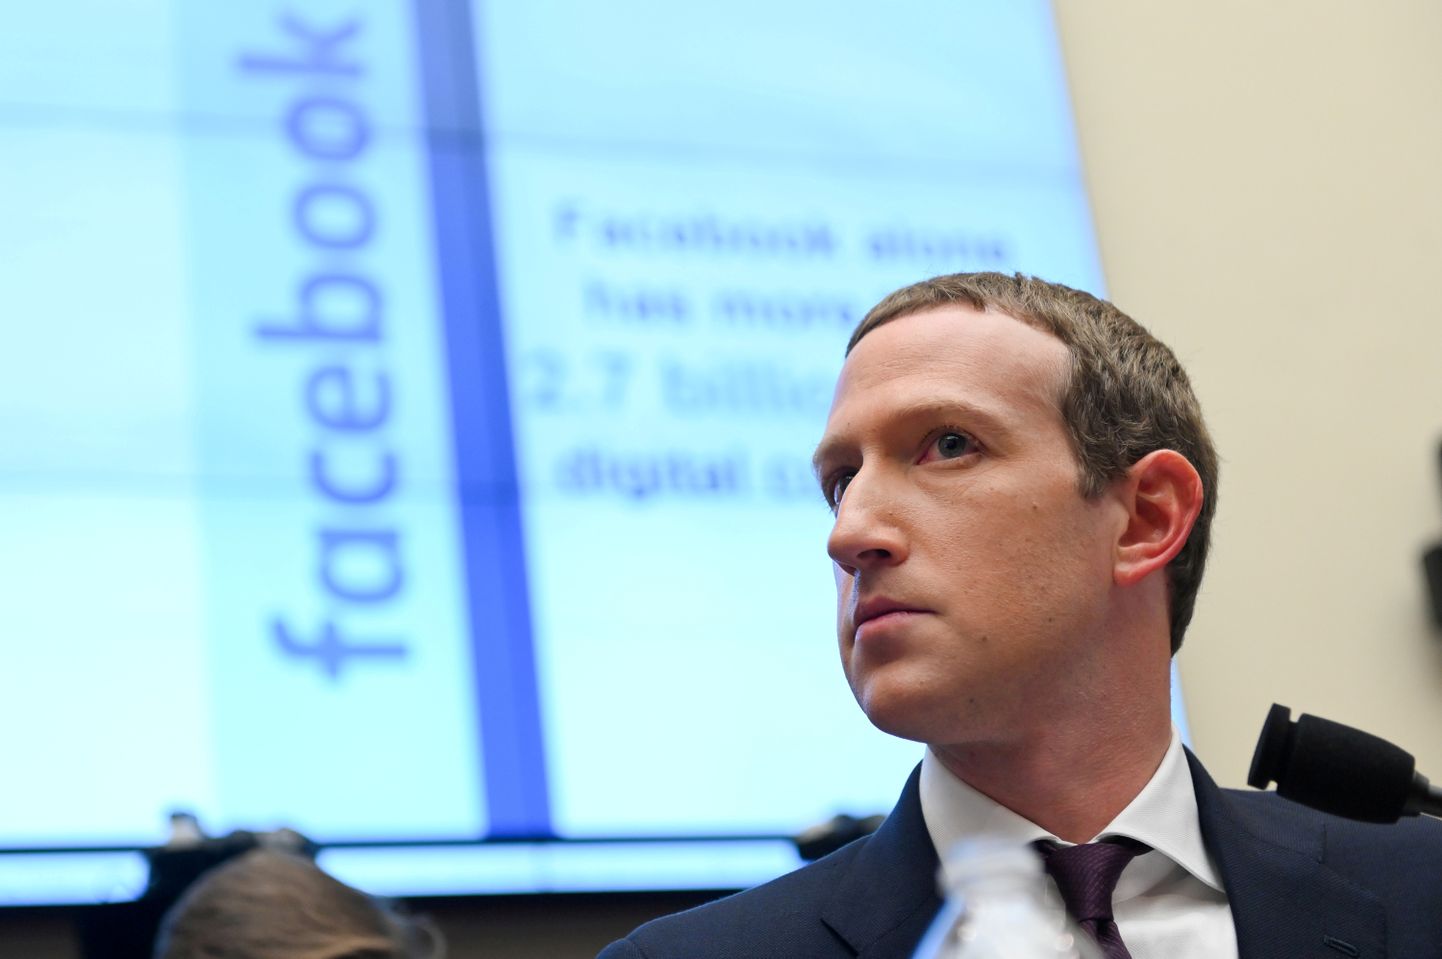 Facebooki asutaja ning tegevdirektor Mark Zuckerberg Washingtonis parlamendikomisjoni kuulamisel 23. oktoober 2019.